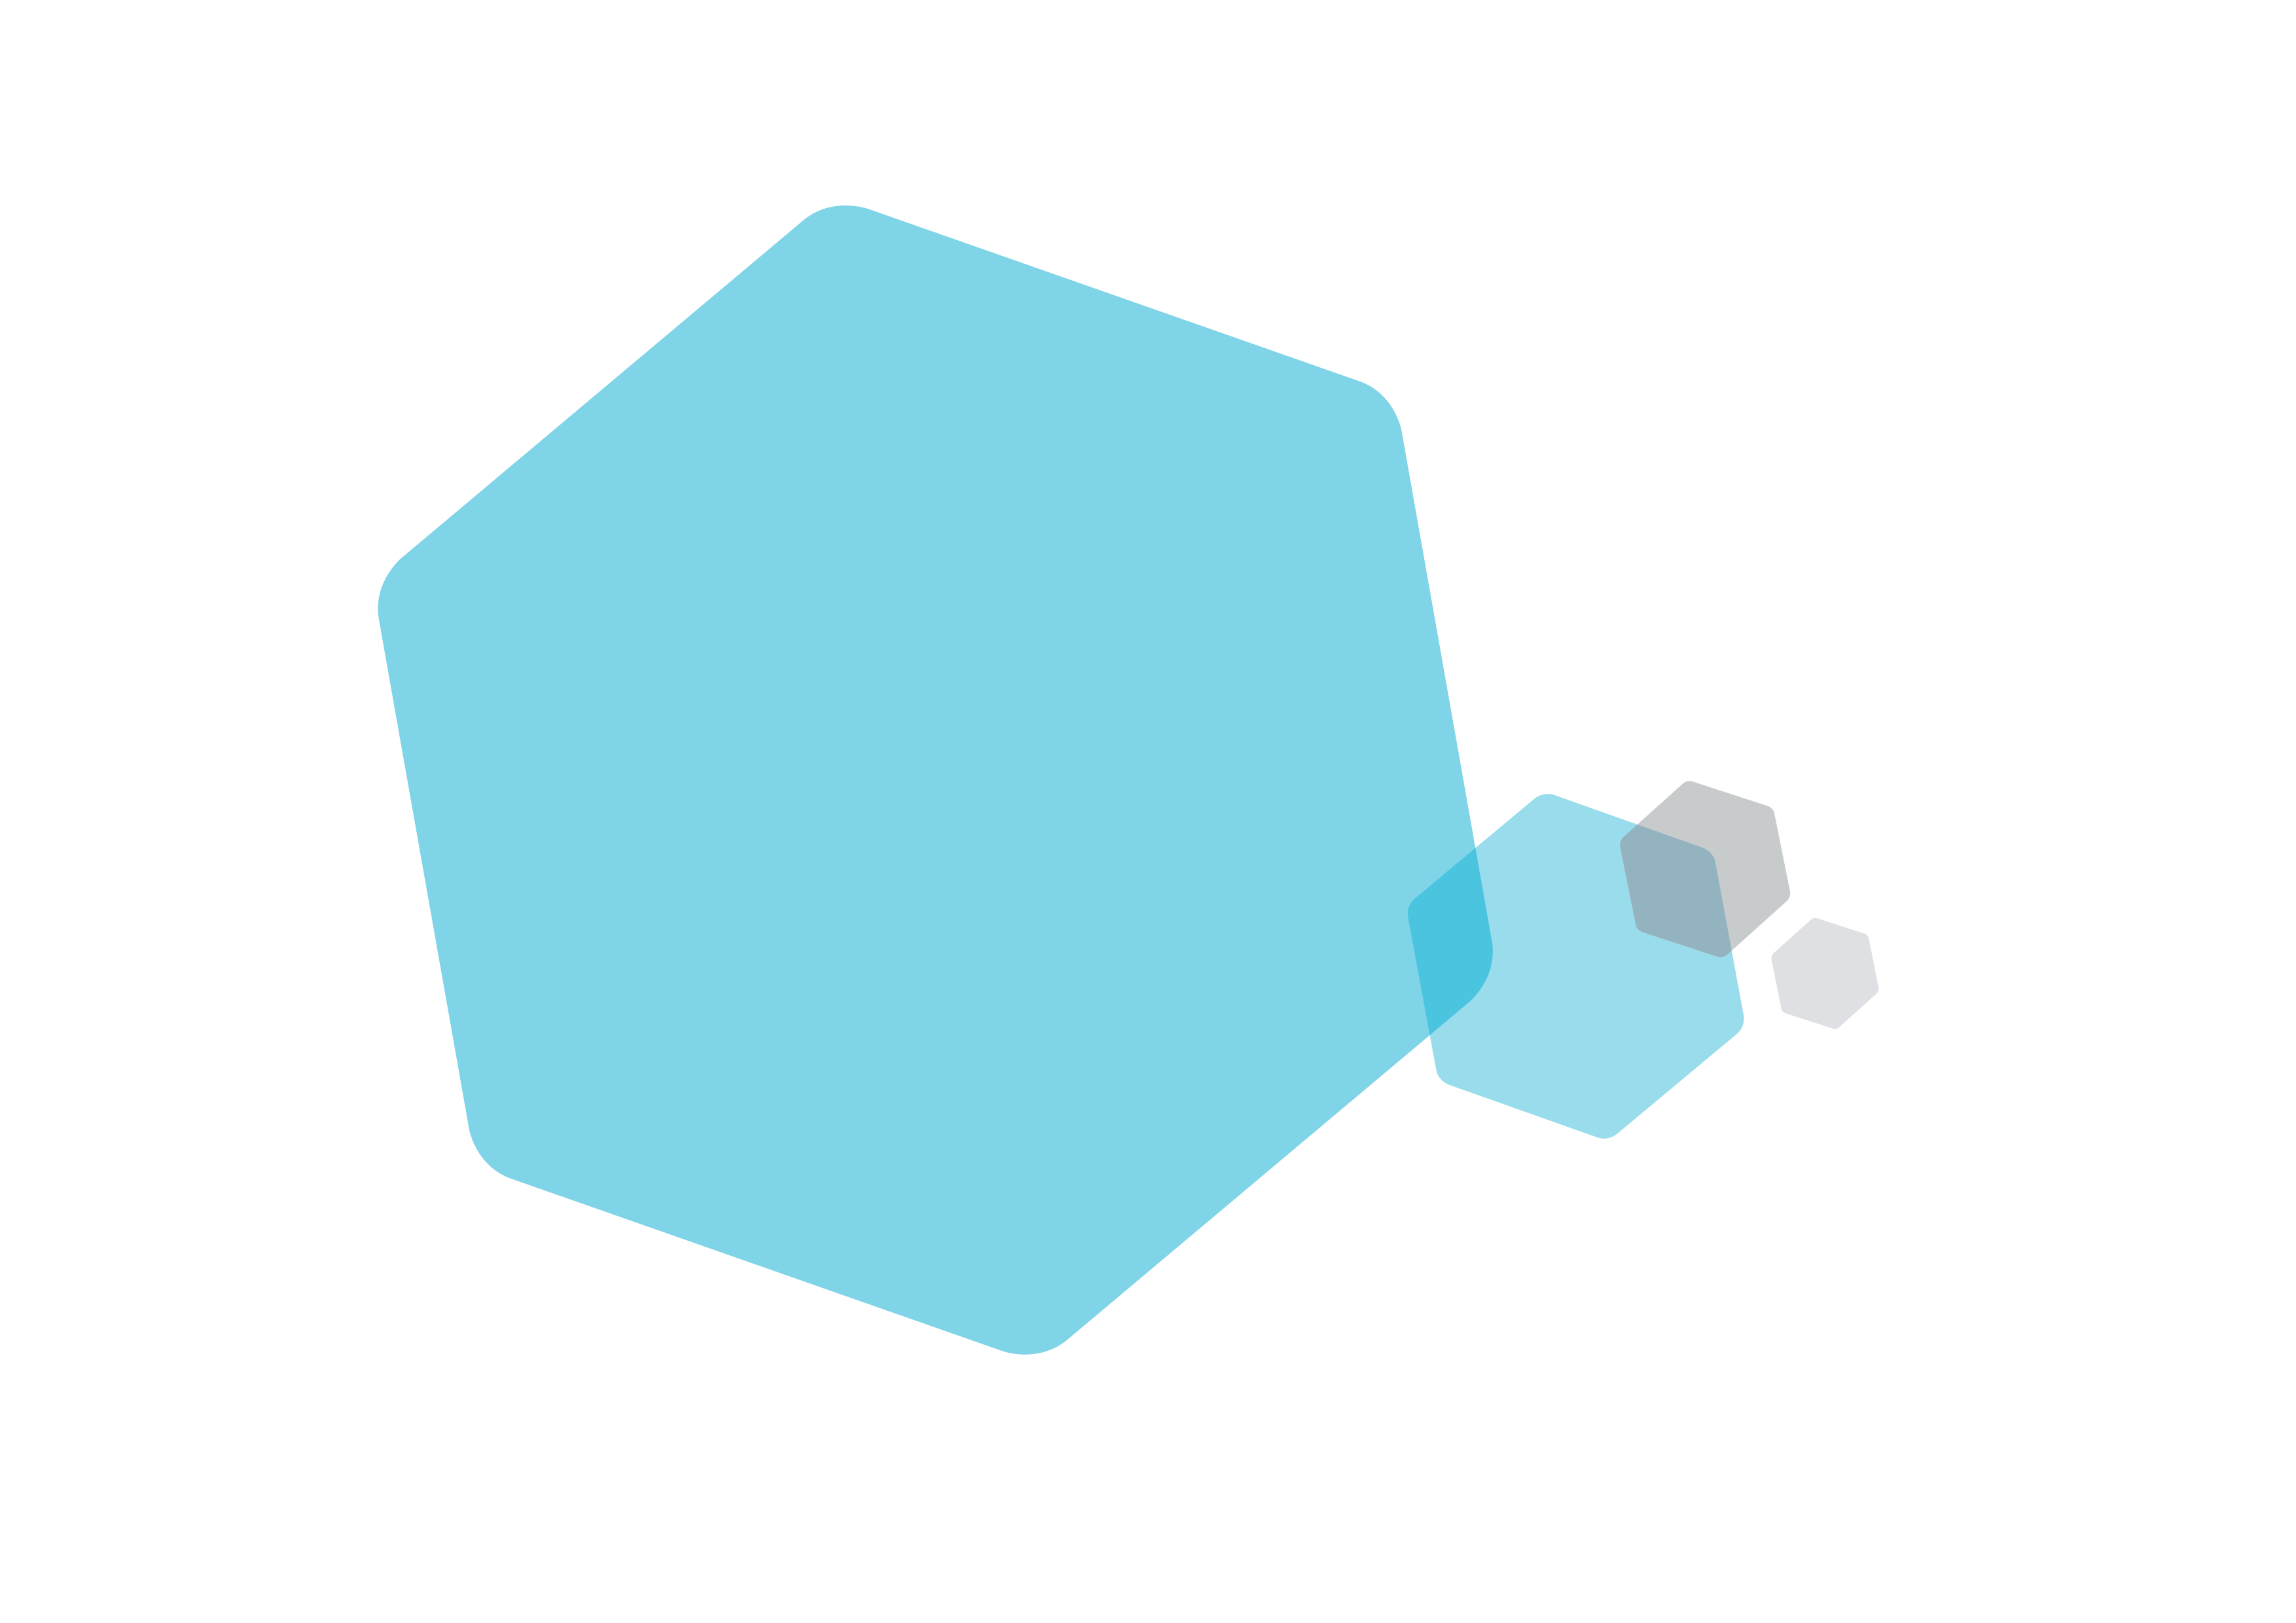 NHSc Hexagon